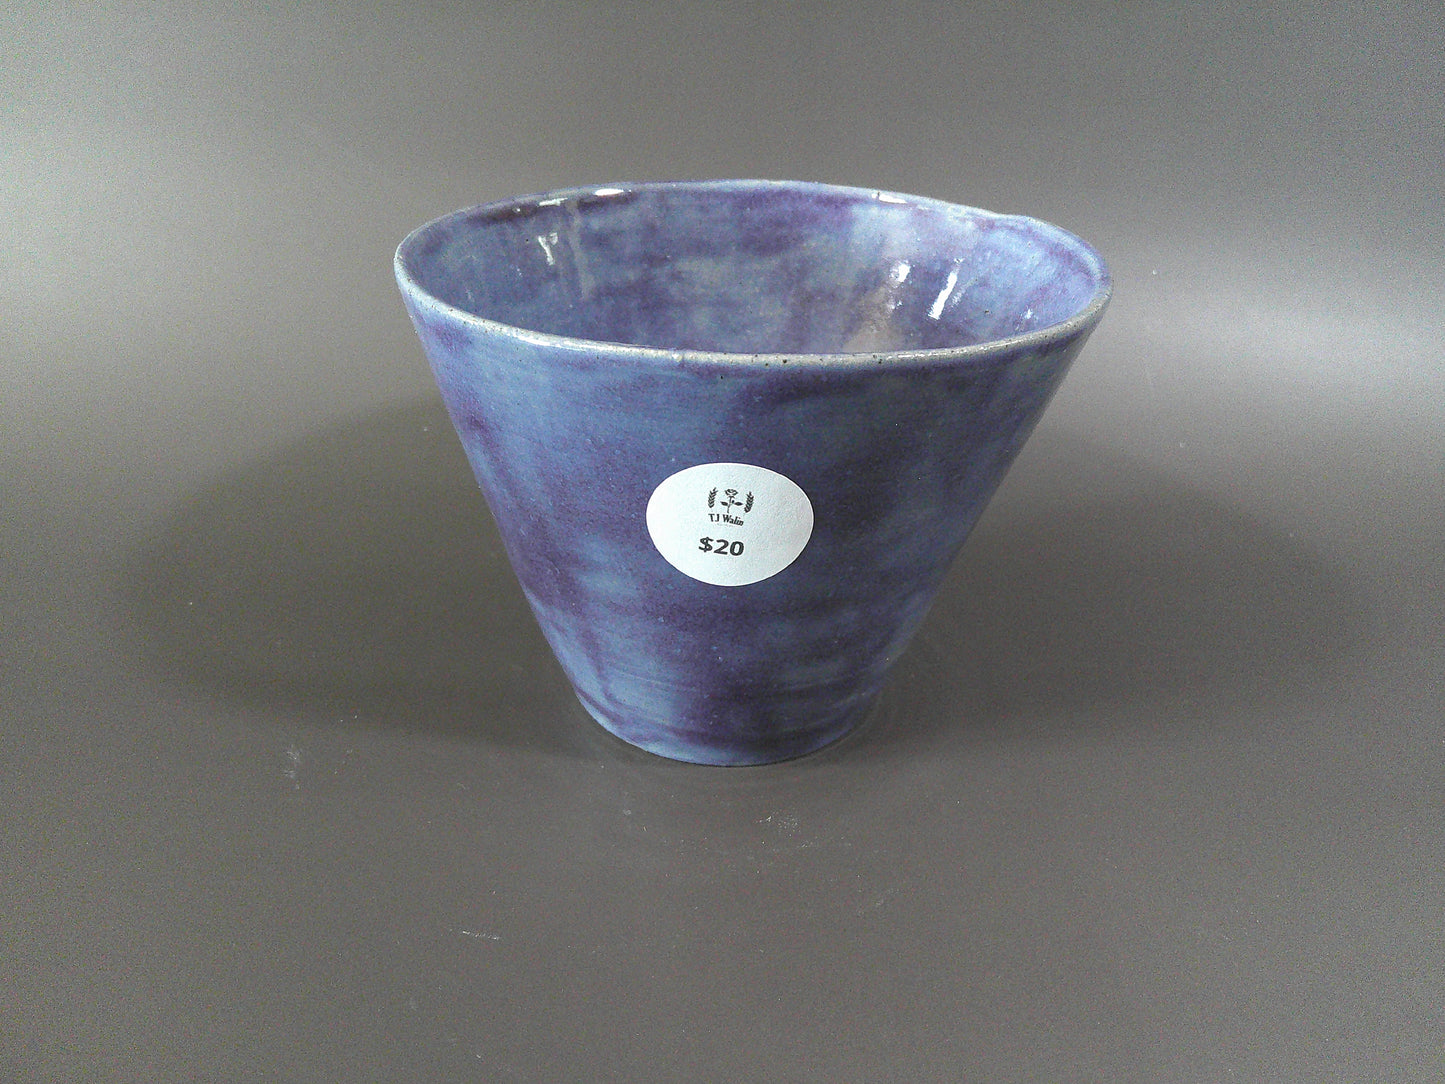 Purple/Blue Pottery piece $20